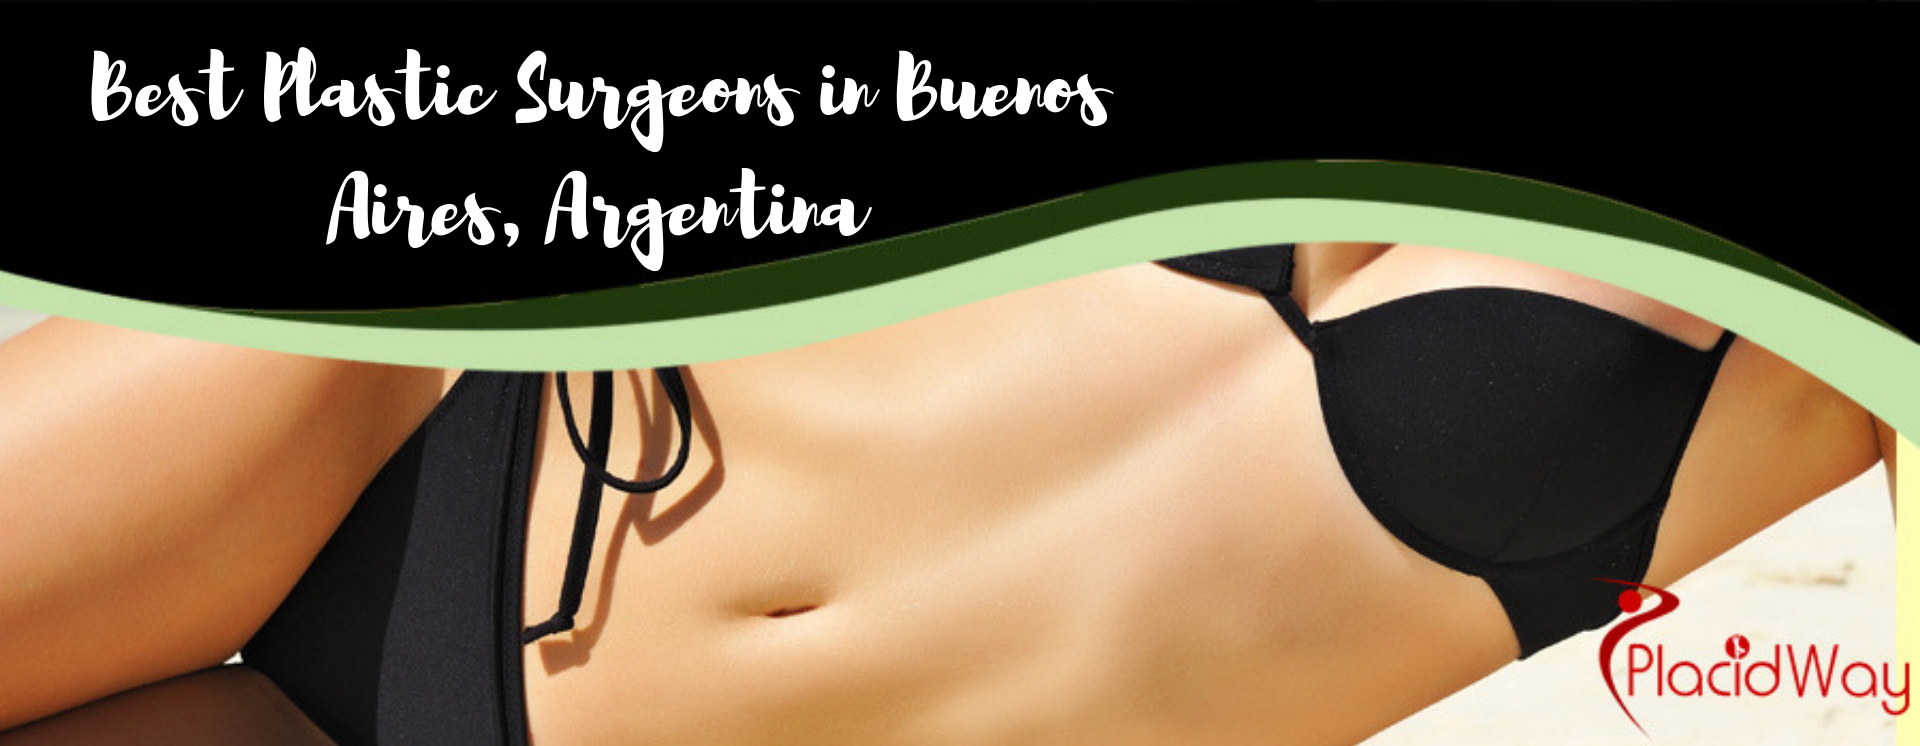 Best Plastic Surgeons in Buenos Aires, Argentina